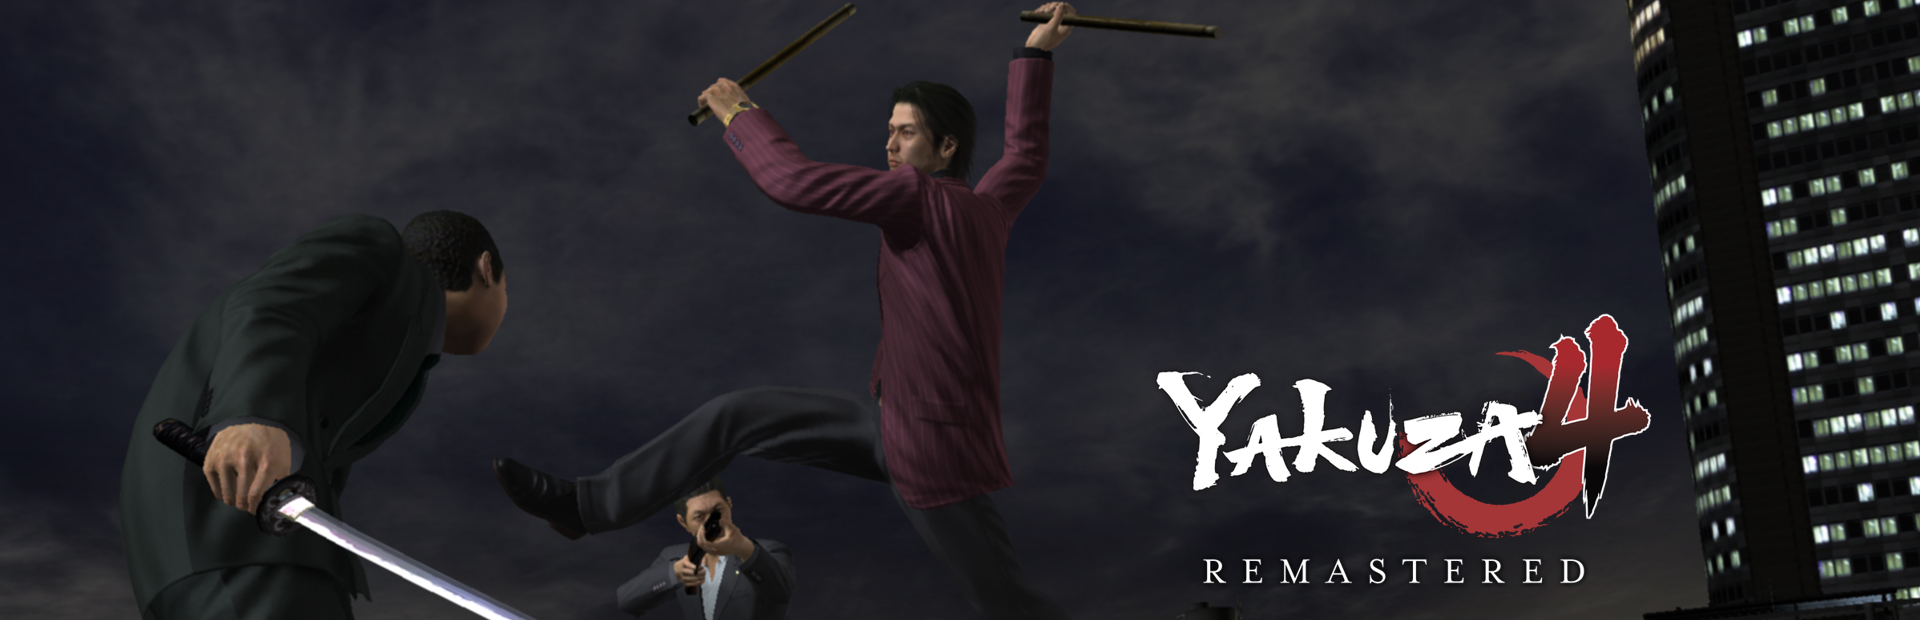 دانلود بازی Yakuza 4 Remastered برای کامپیوتر | گیمباتو